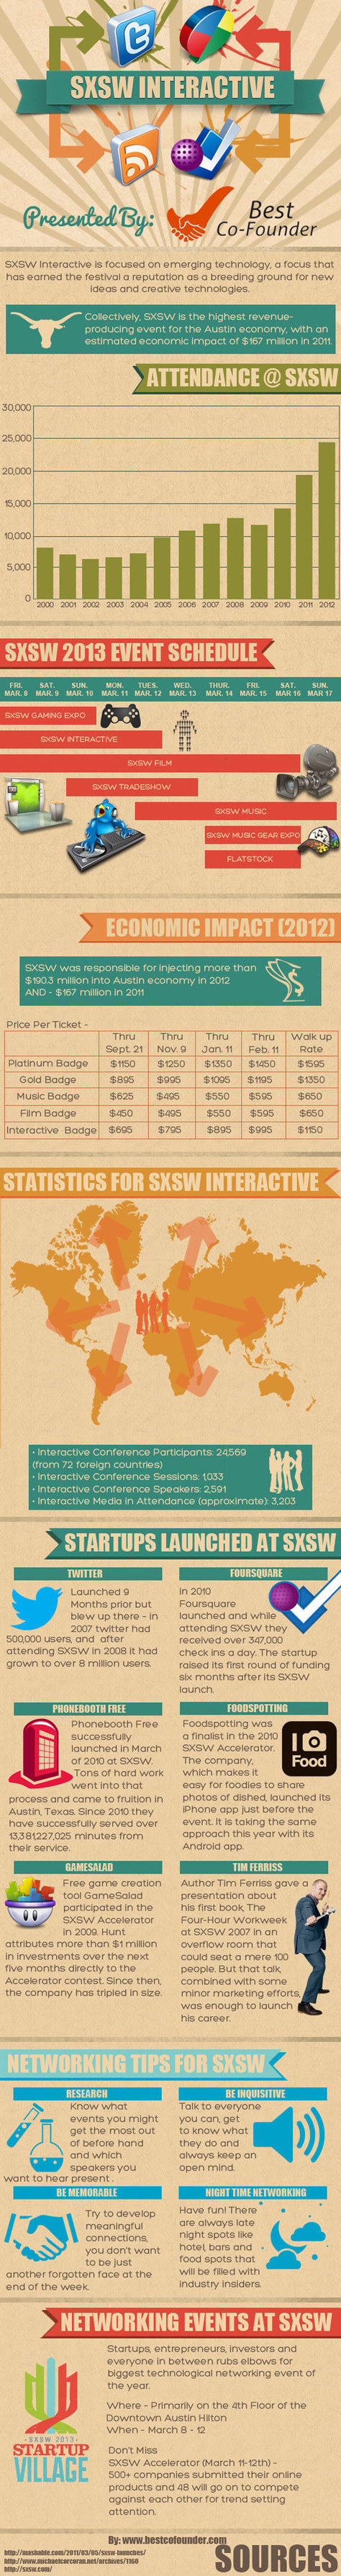 SXSW Interactive